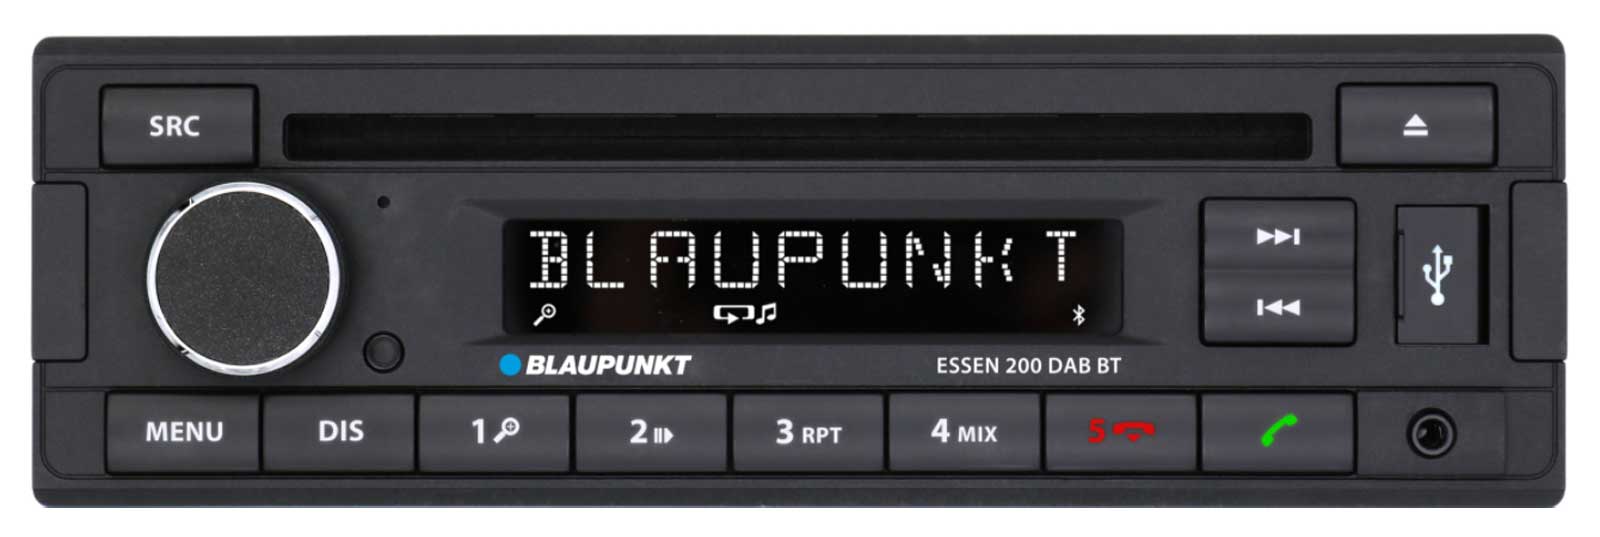 Blaupunkt Essen 200 DAB BT - CD/MP3-Autoradio mit DAB / Bluetooth / USB / AUX-IN